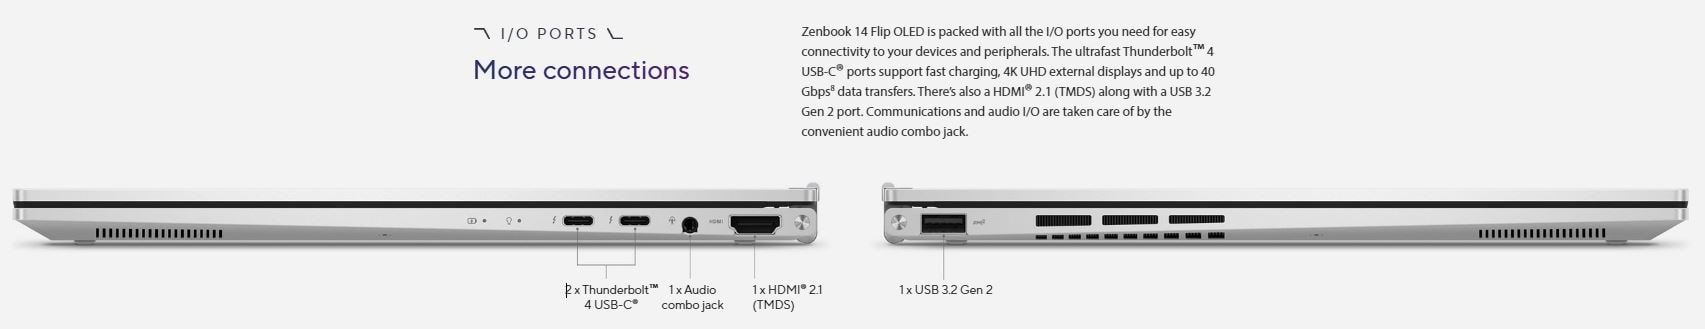 Asus Zenbook 14 Flip Ports eg-tech